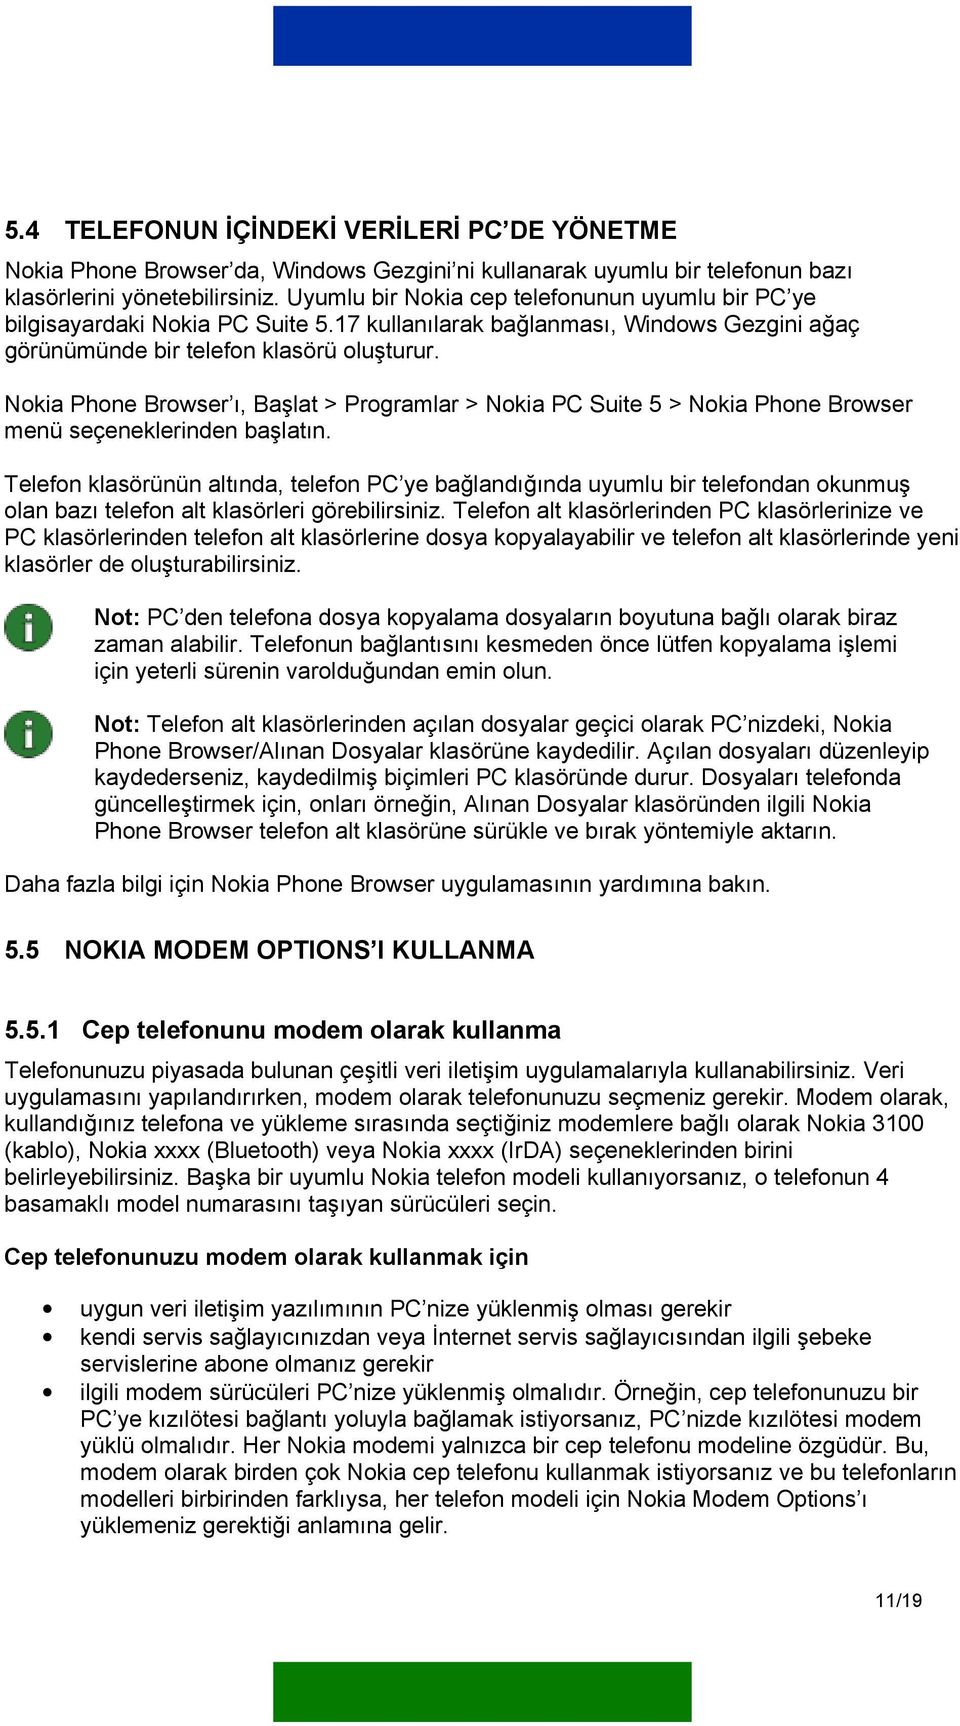 Nokia Phone Browser ı, Başlat > Programlar > Nokia PC Suite 5 > Nokia Phone Browser menü seçeneklerinden başlatın.